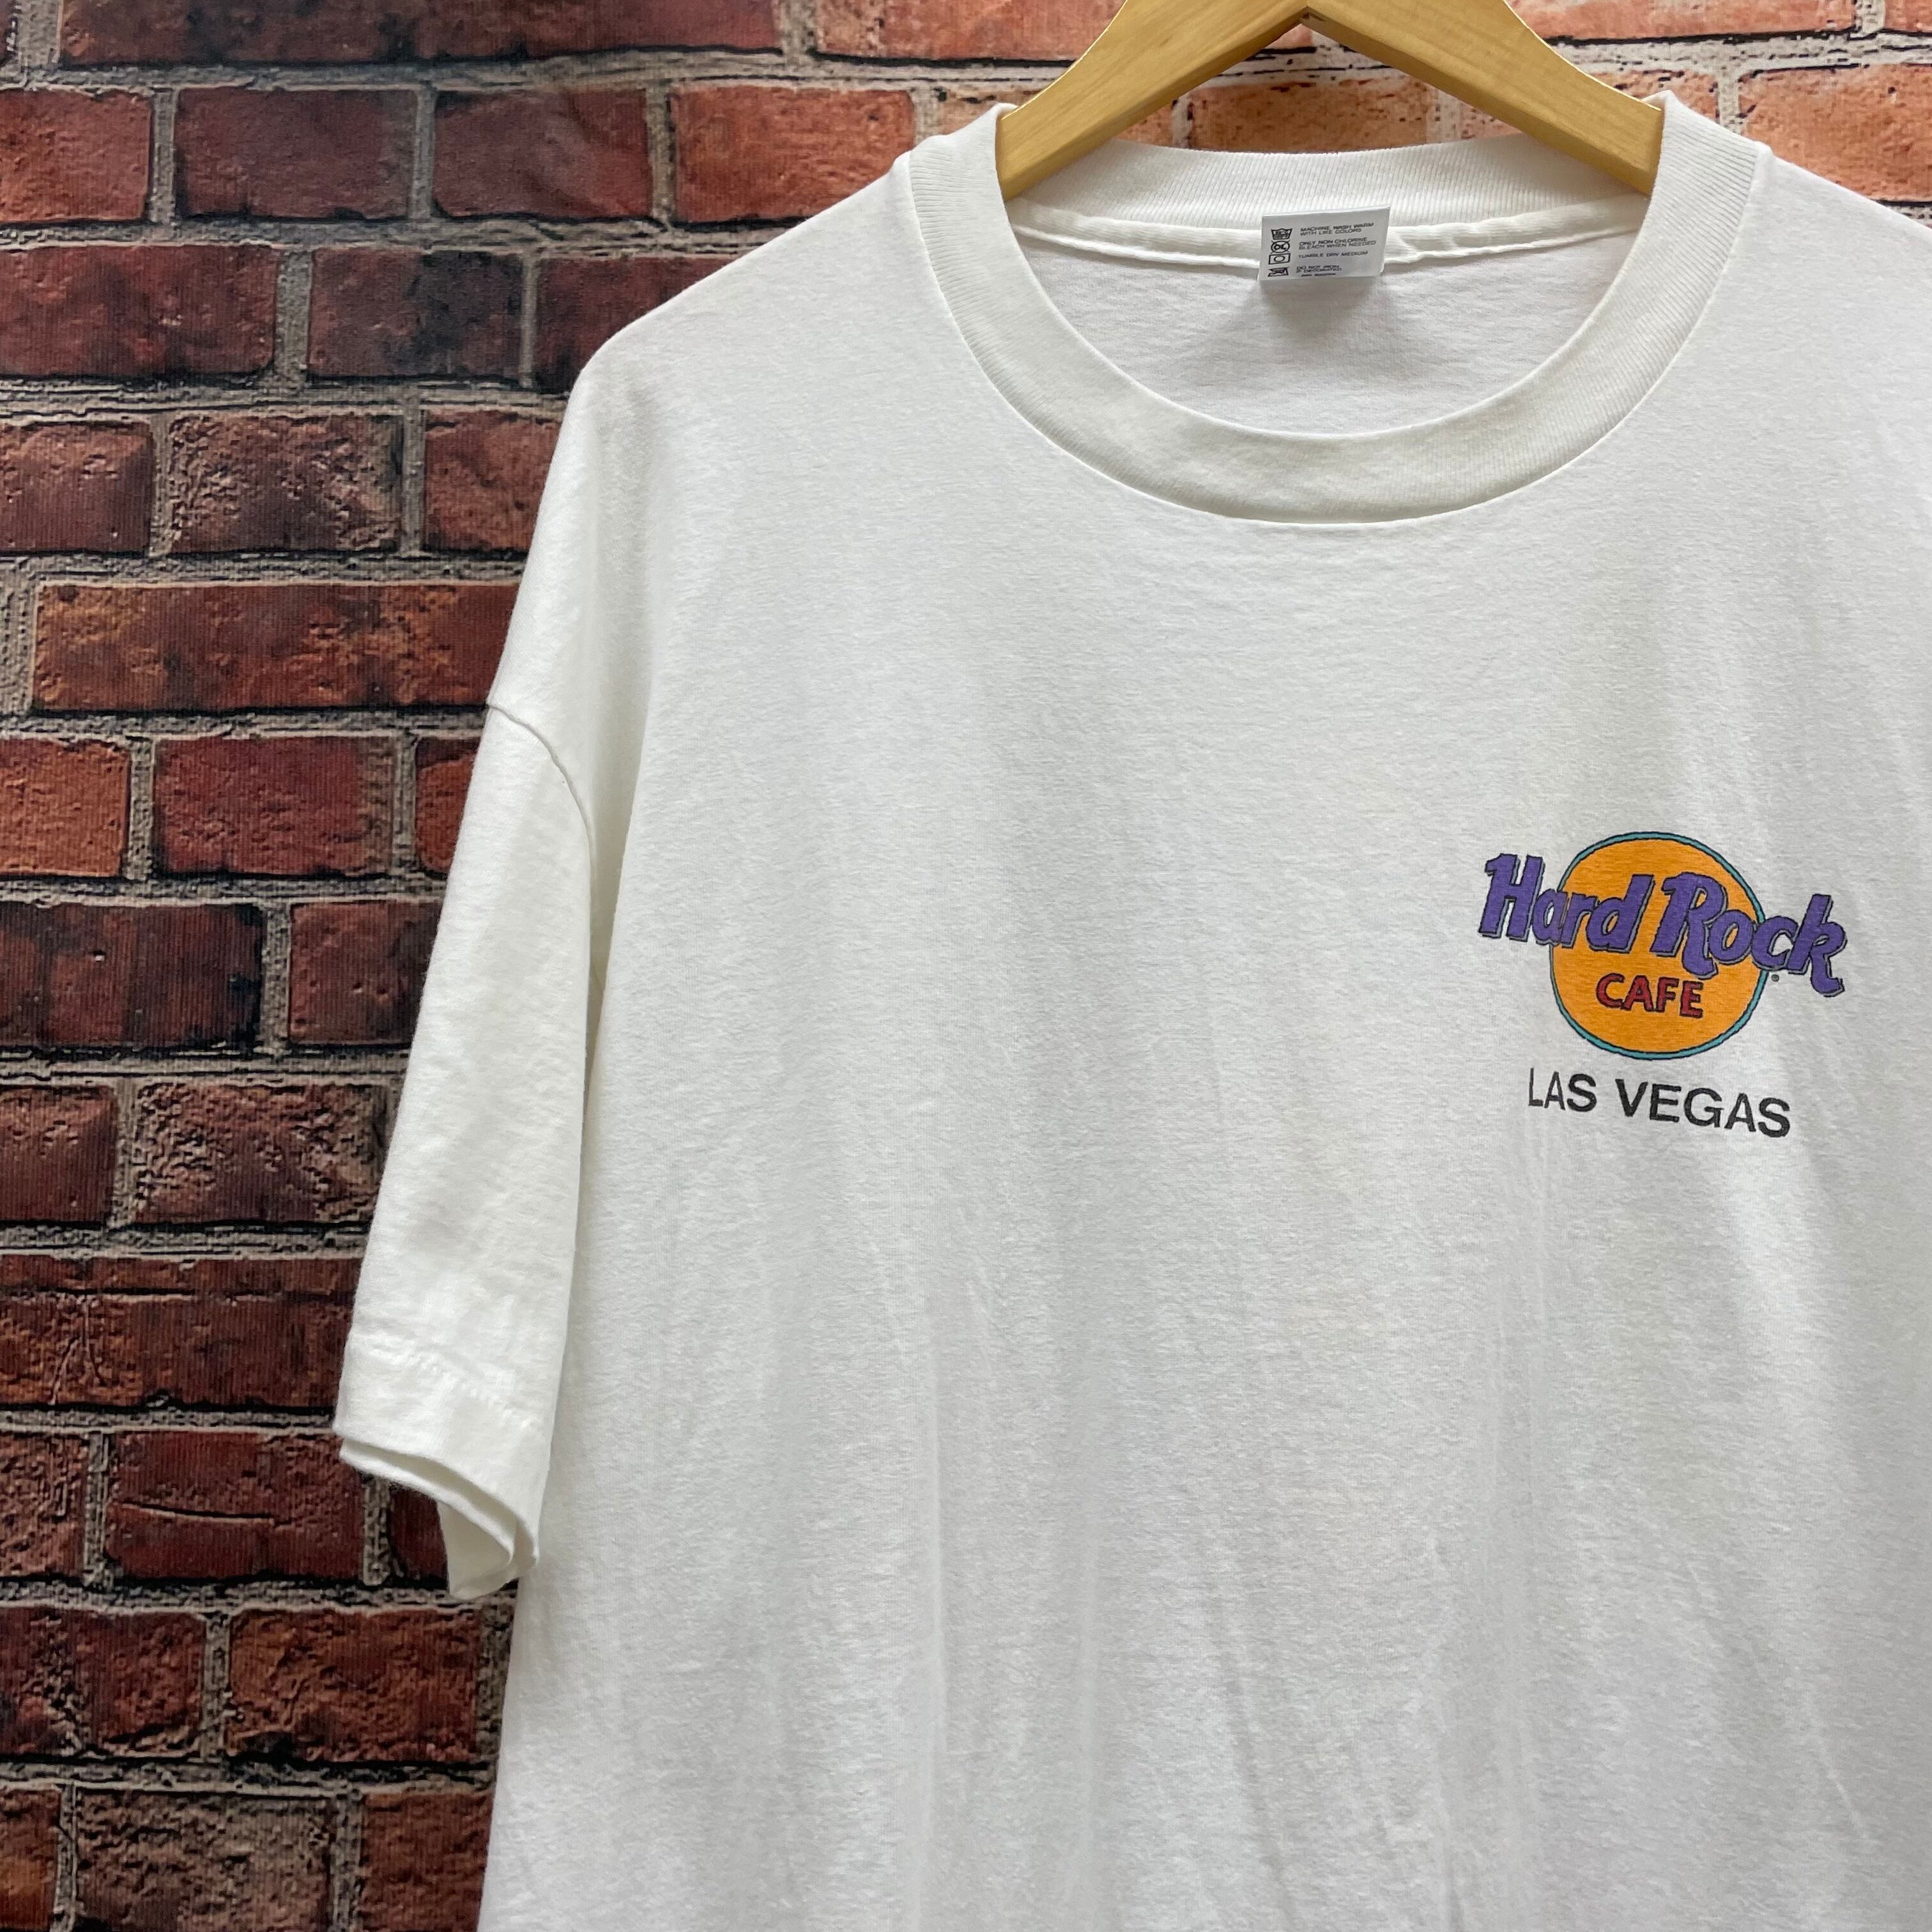 ハードロックカフェ Tシャツ ビンテージ hard rock cafe  90s